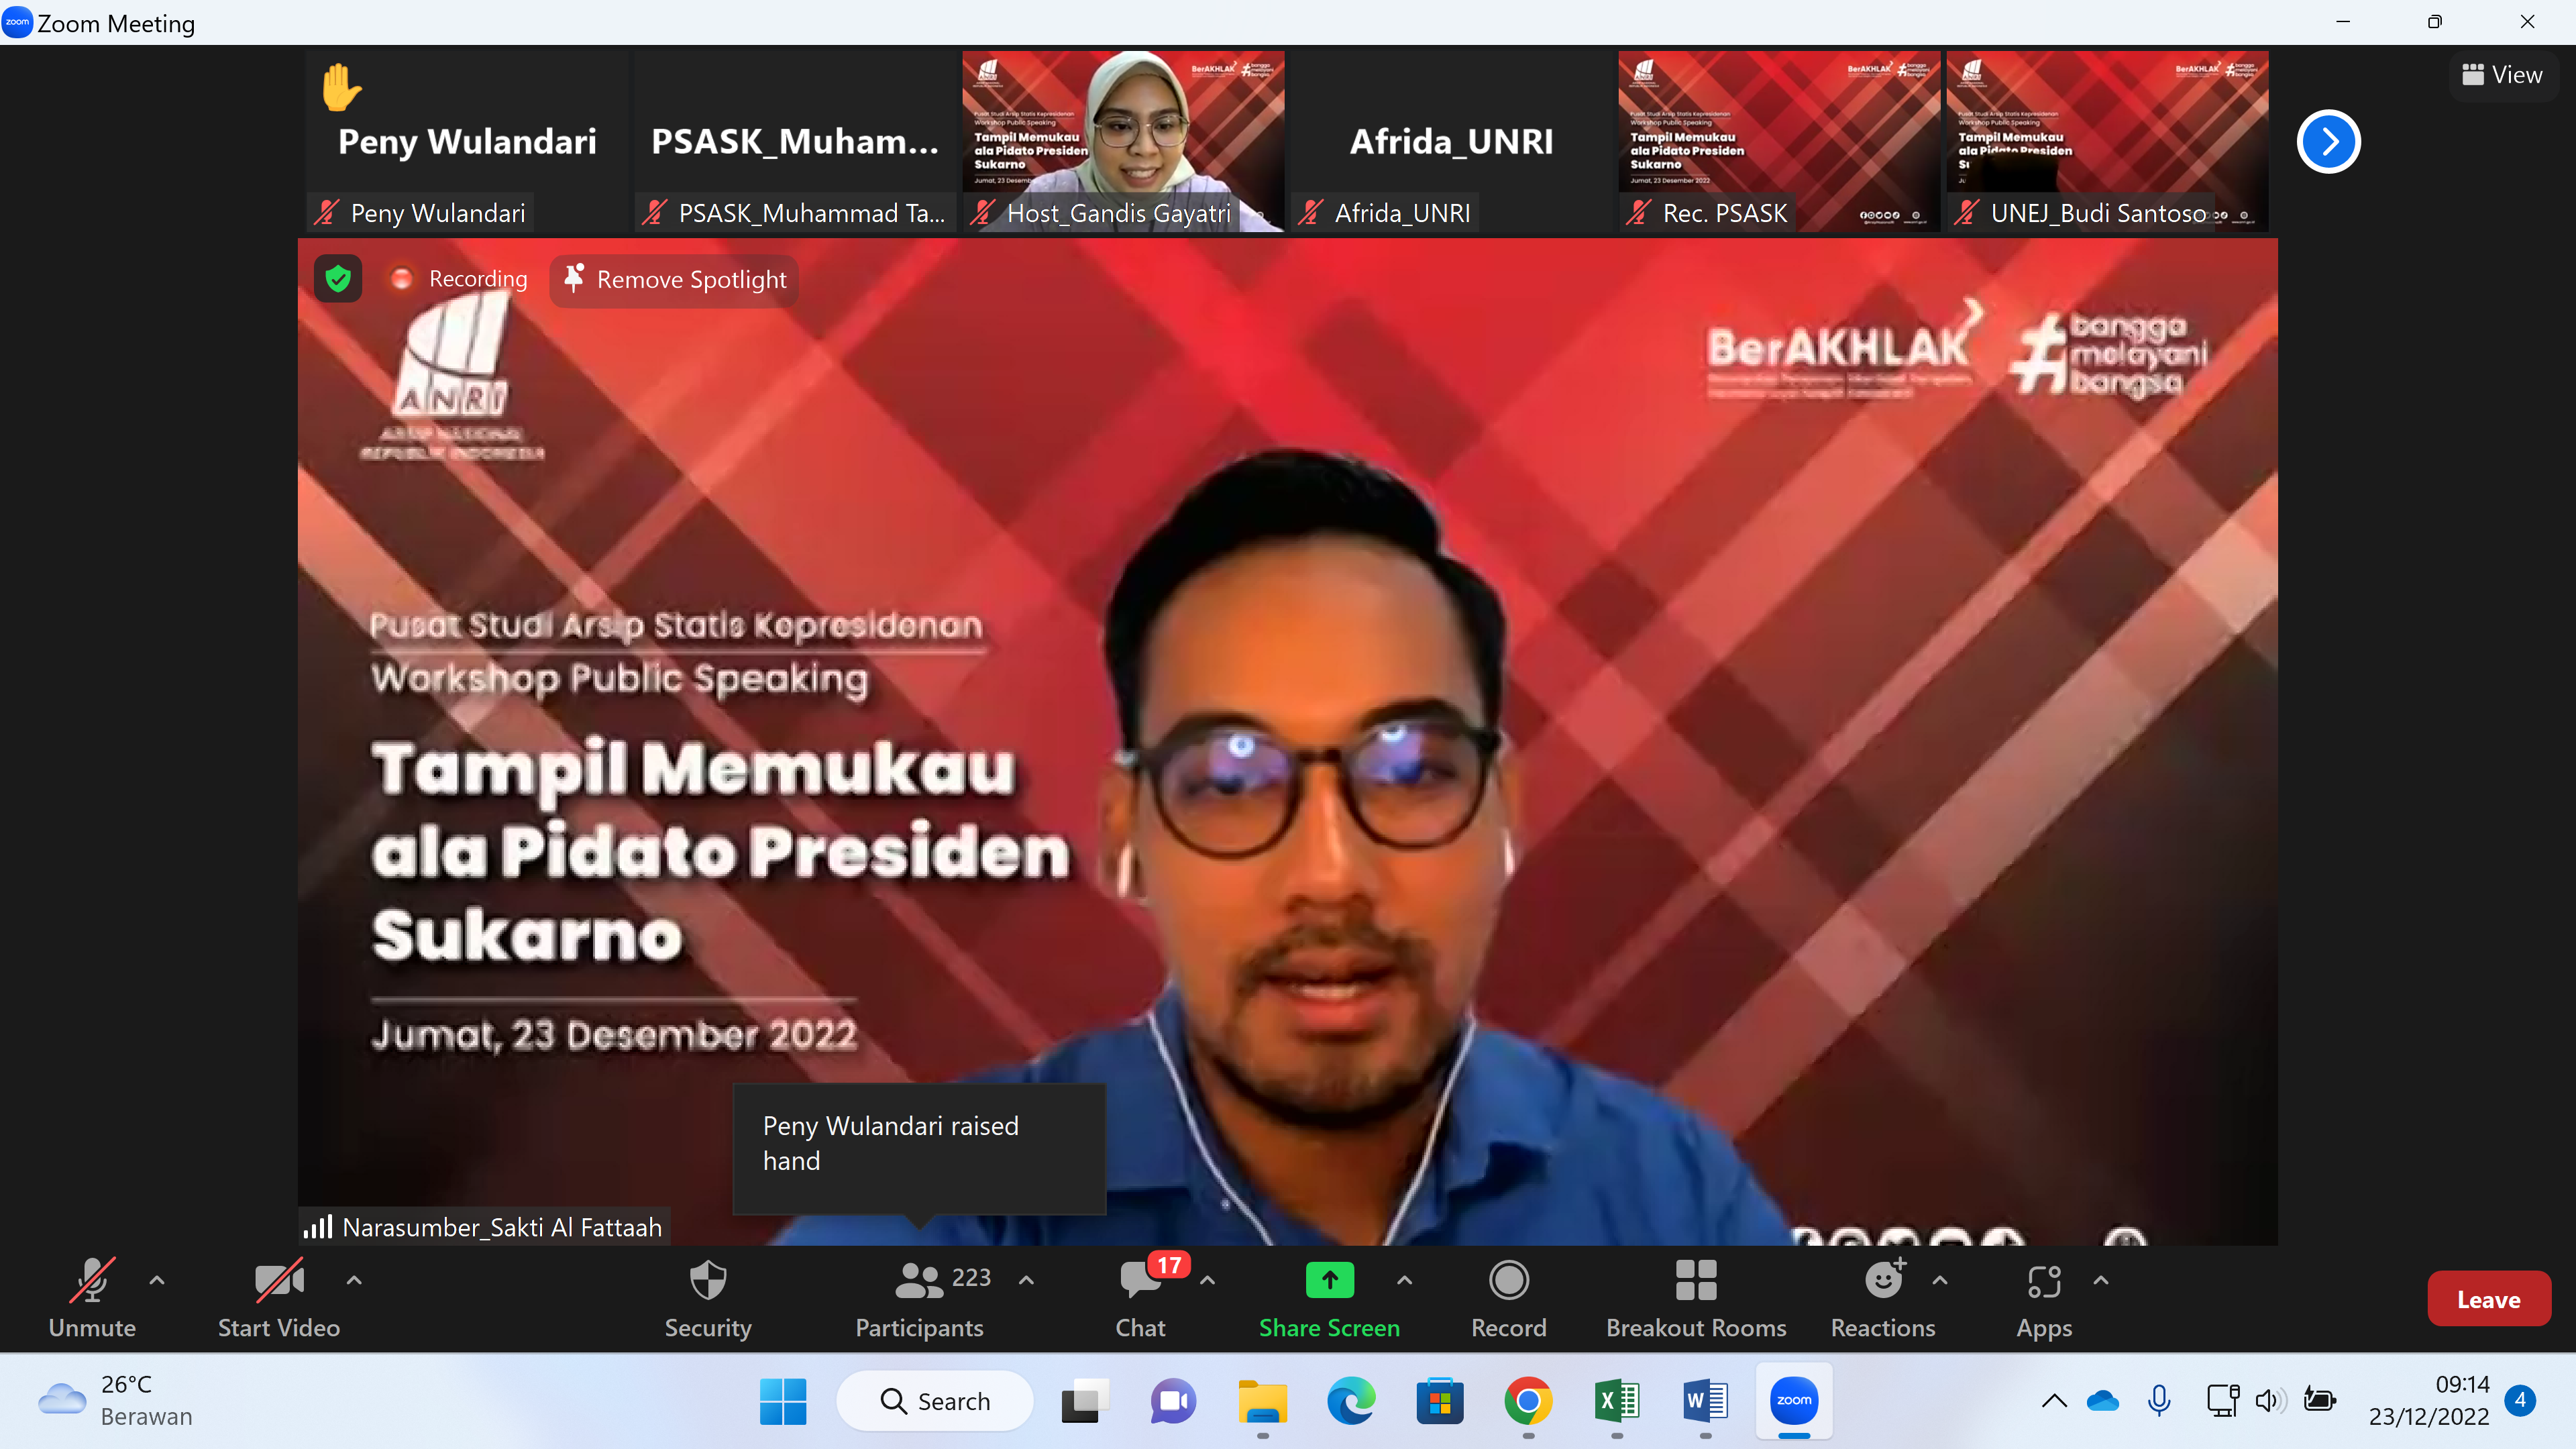 PSAS Kepresidenan Selenggarakan Workshop Public Speaking "Tampil Memukau ala Pidato Presiden Sukarno"